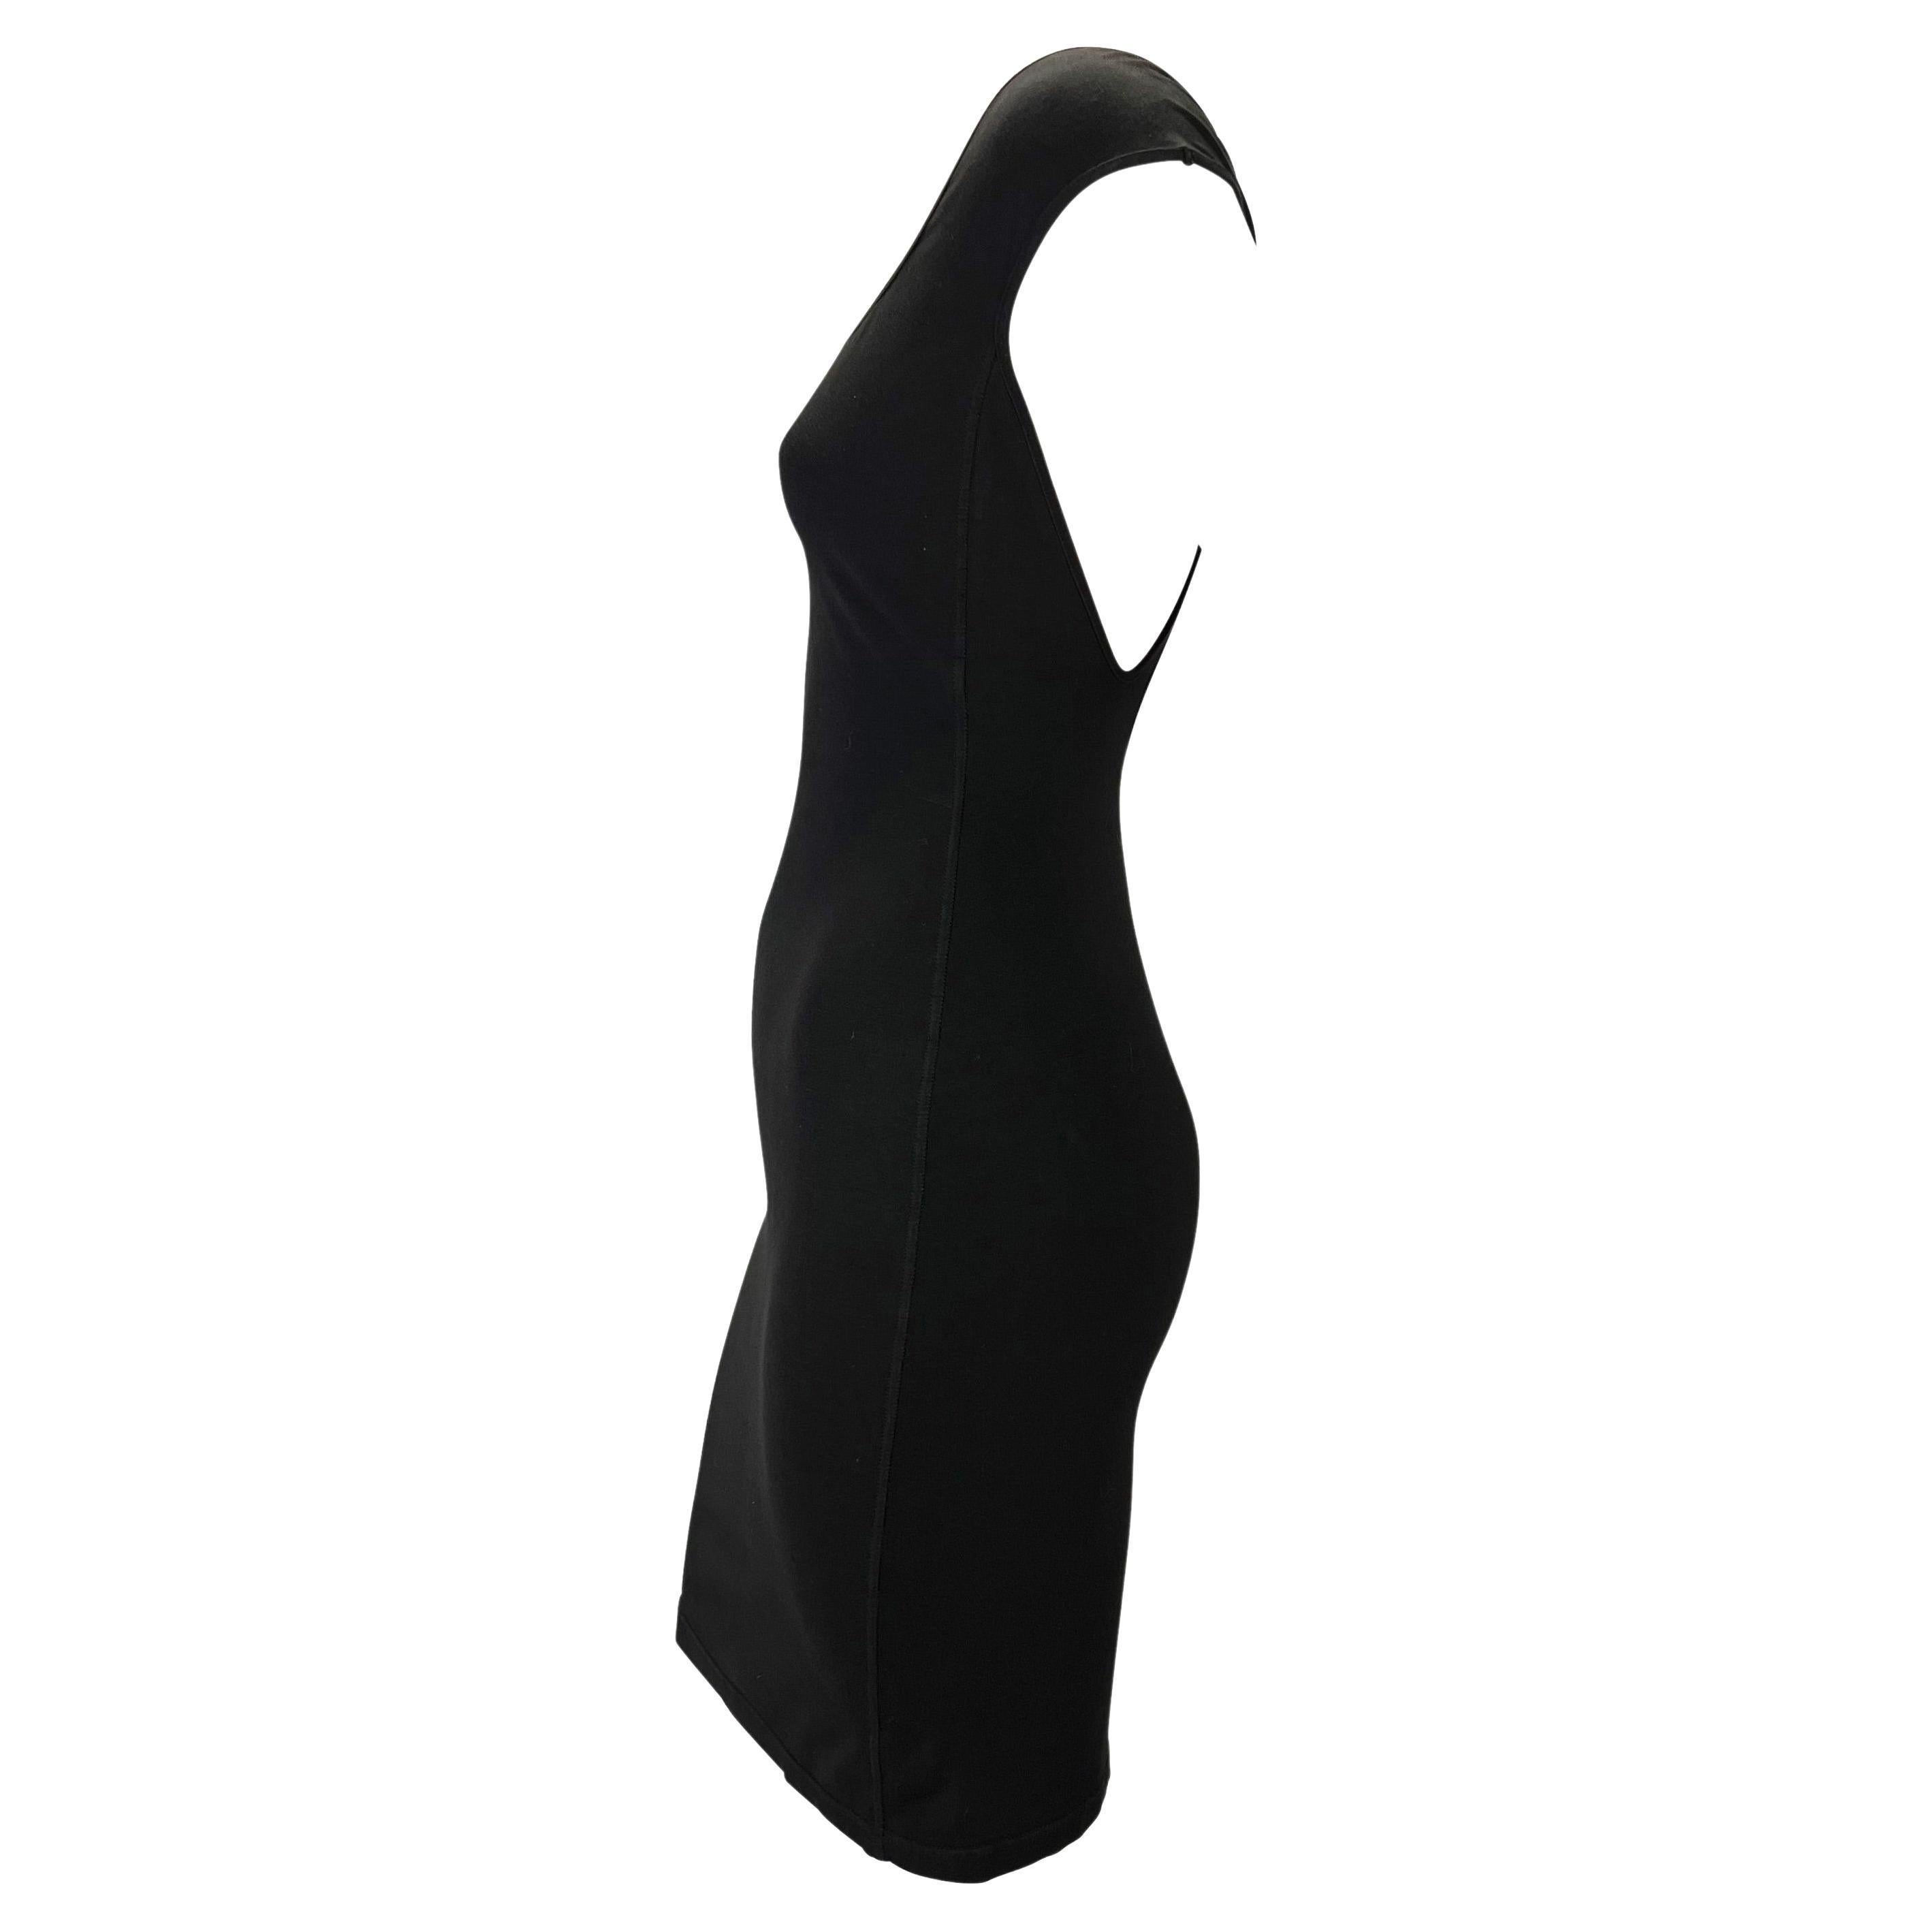 S/S 1989 Azzedine Alaïa Runway Stretch Knit Black Cap Sleeve Bodycon Mini Dress For Sale 2